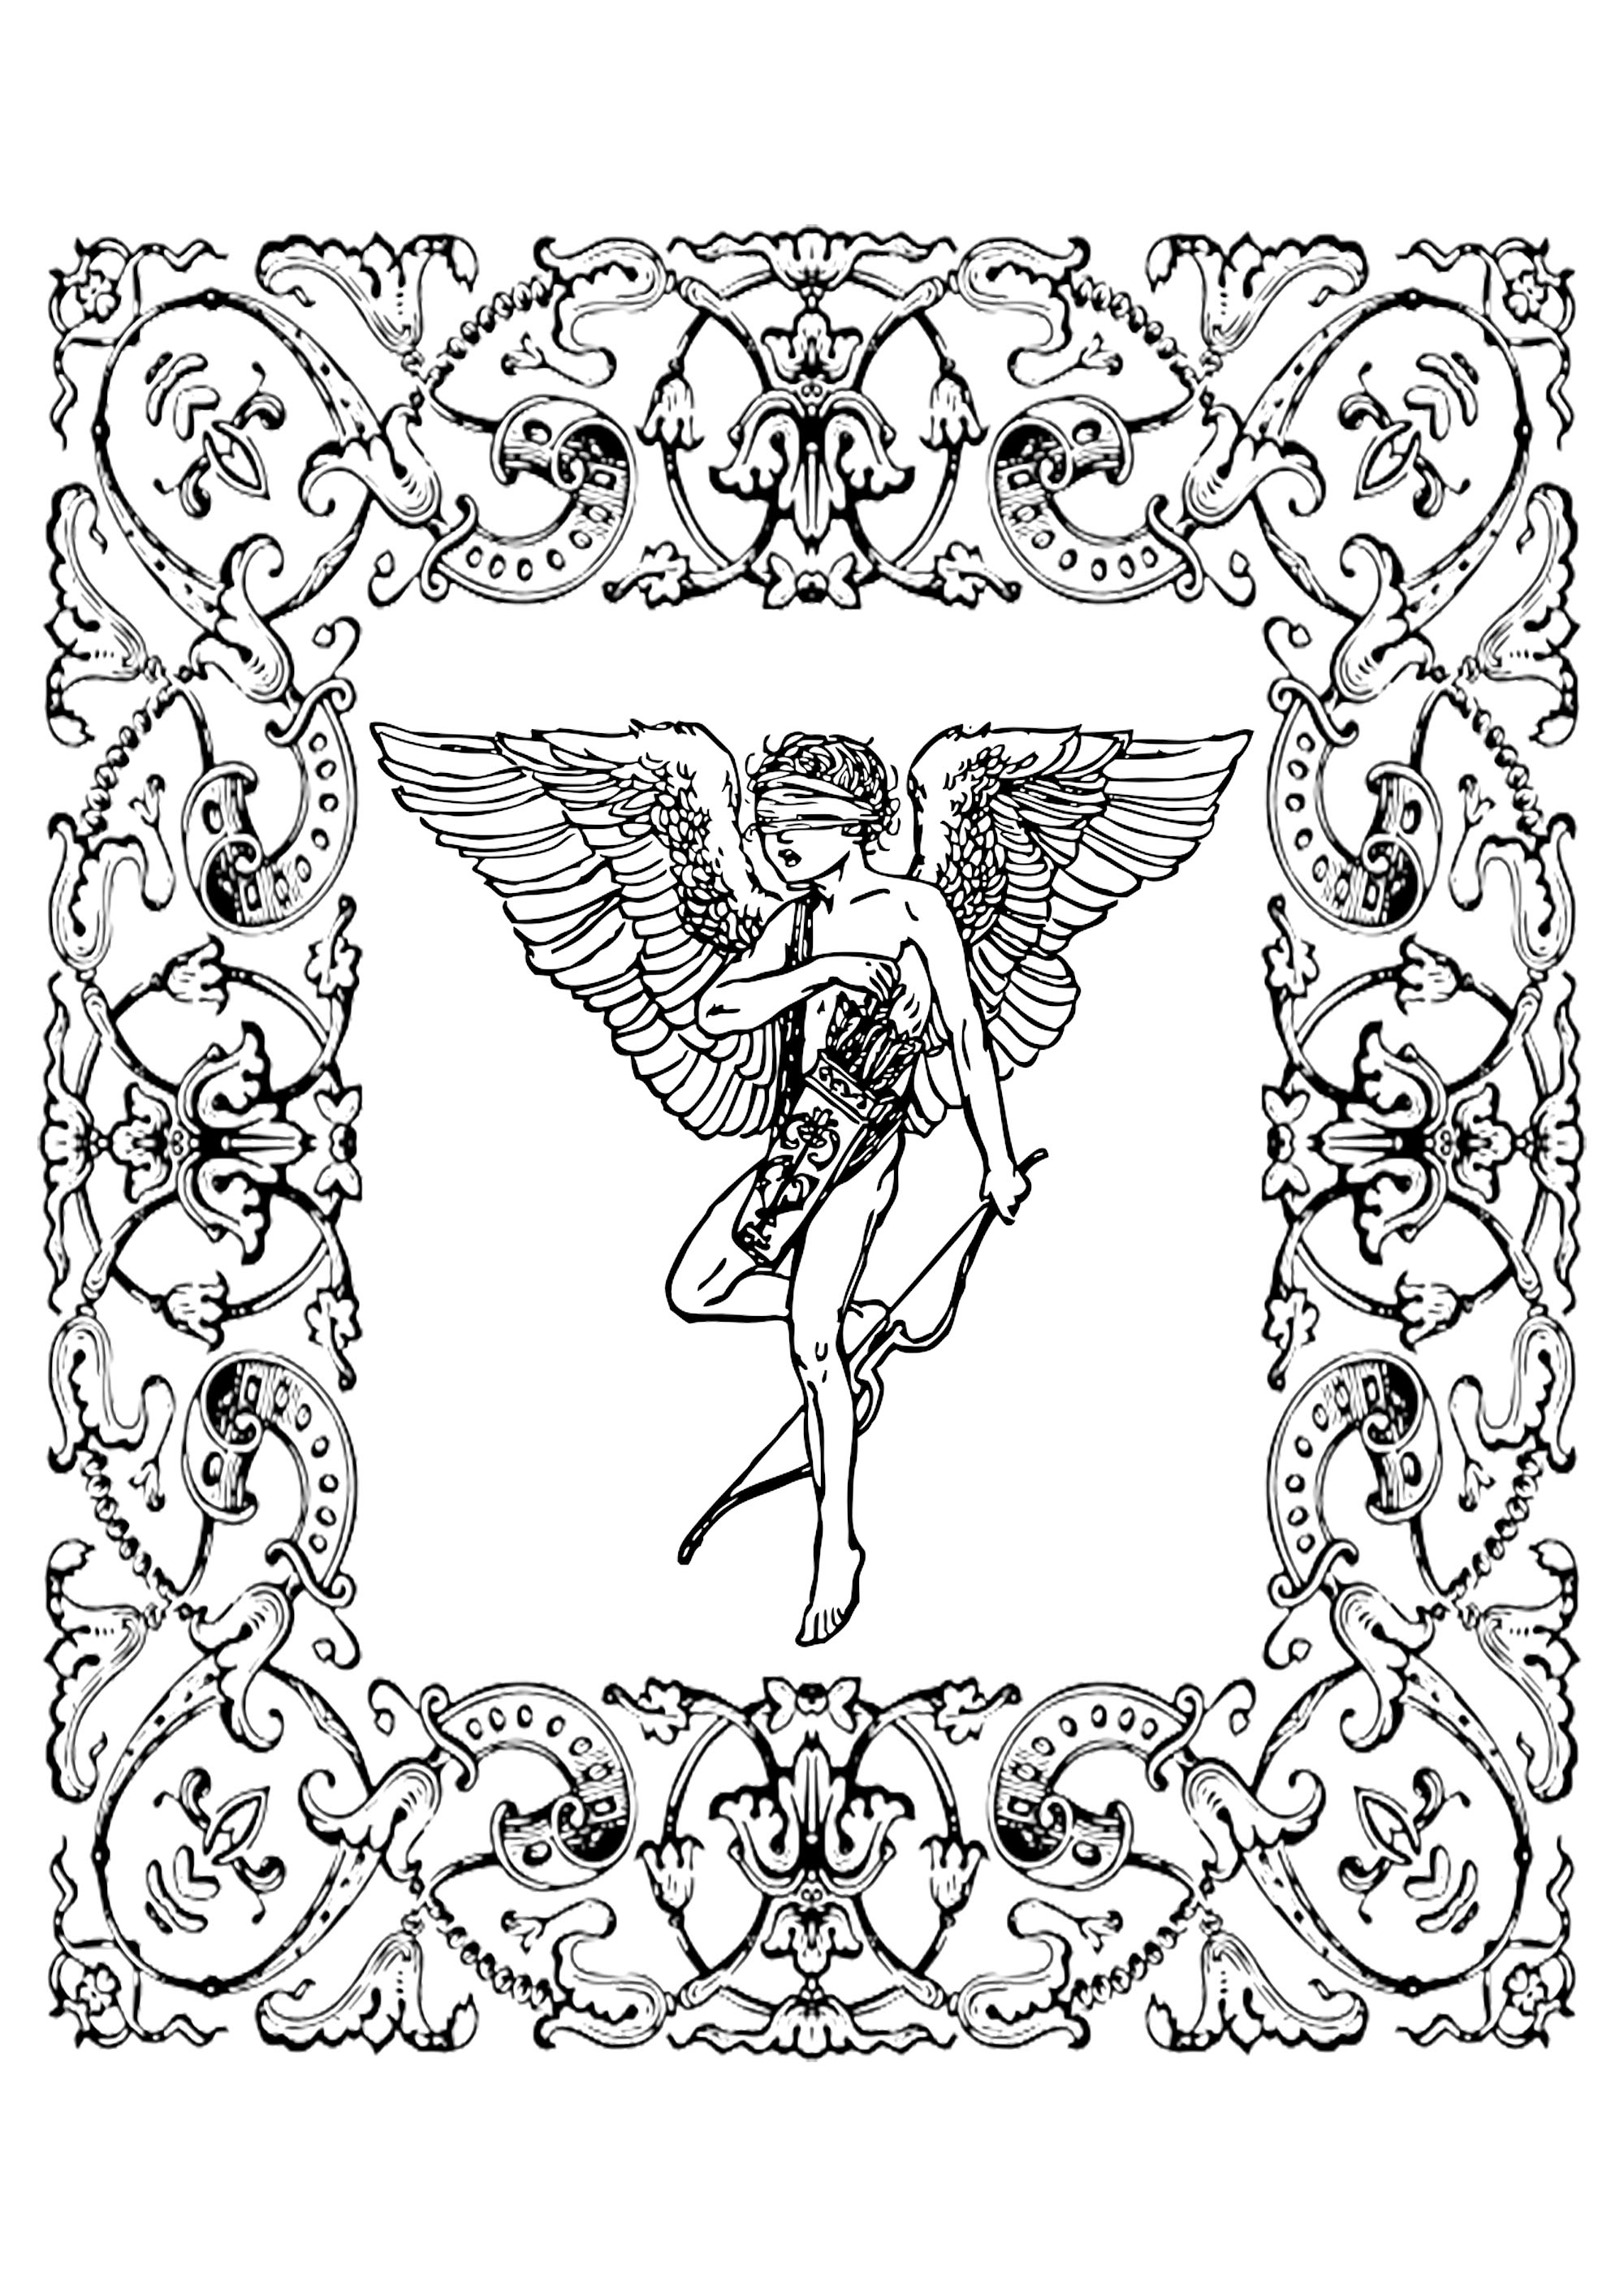 Disegno di Cupido d'epoca in una cornice a fiori